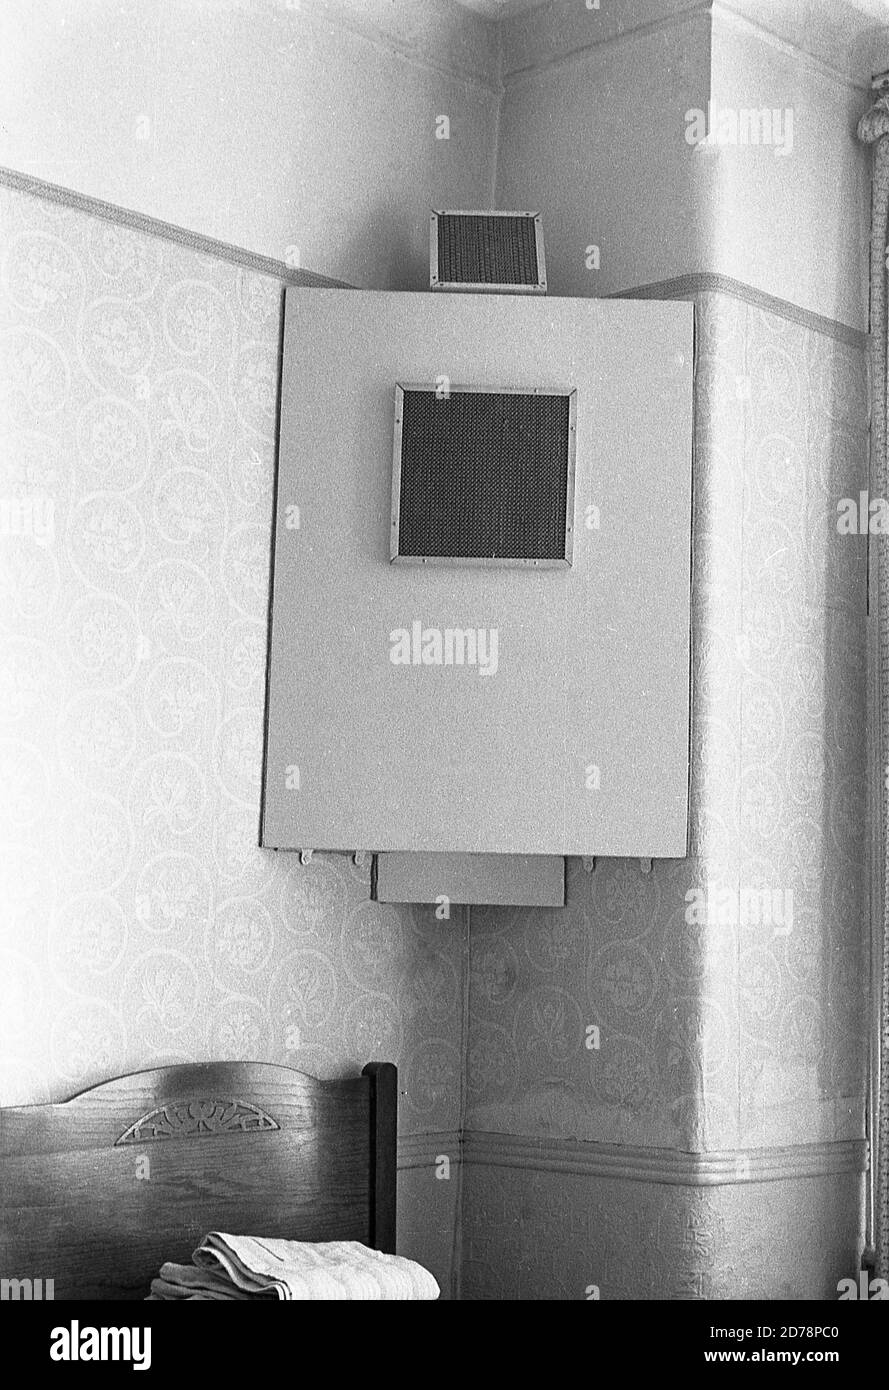 années 1950, image historique de cette époque d'un ensemble de haut-parleurs montés ou fixés à un mur d'angle dans une chambre. Banque D'Images